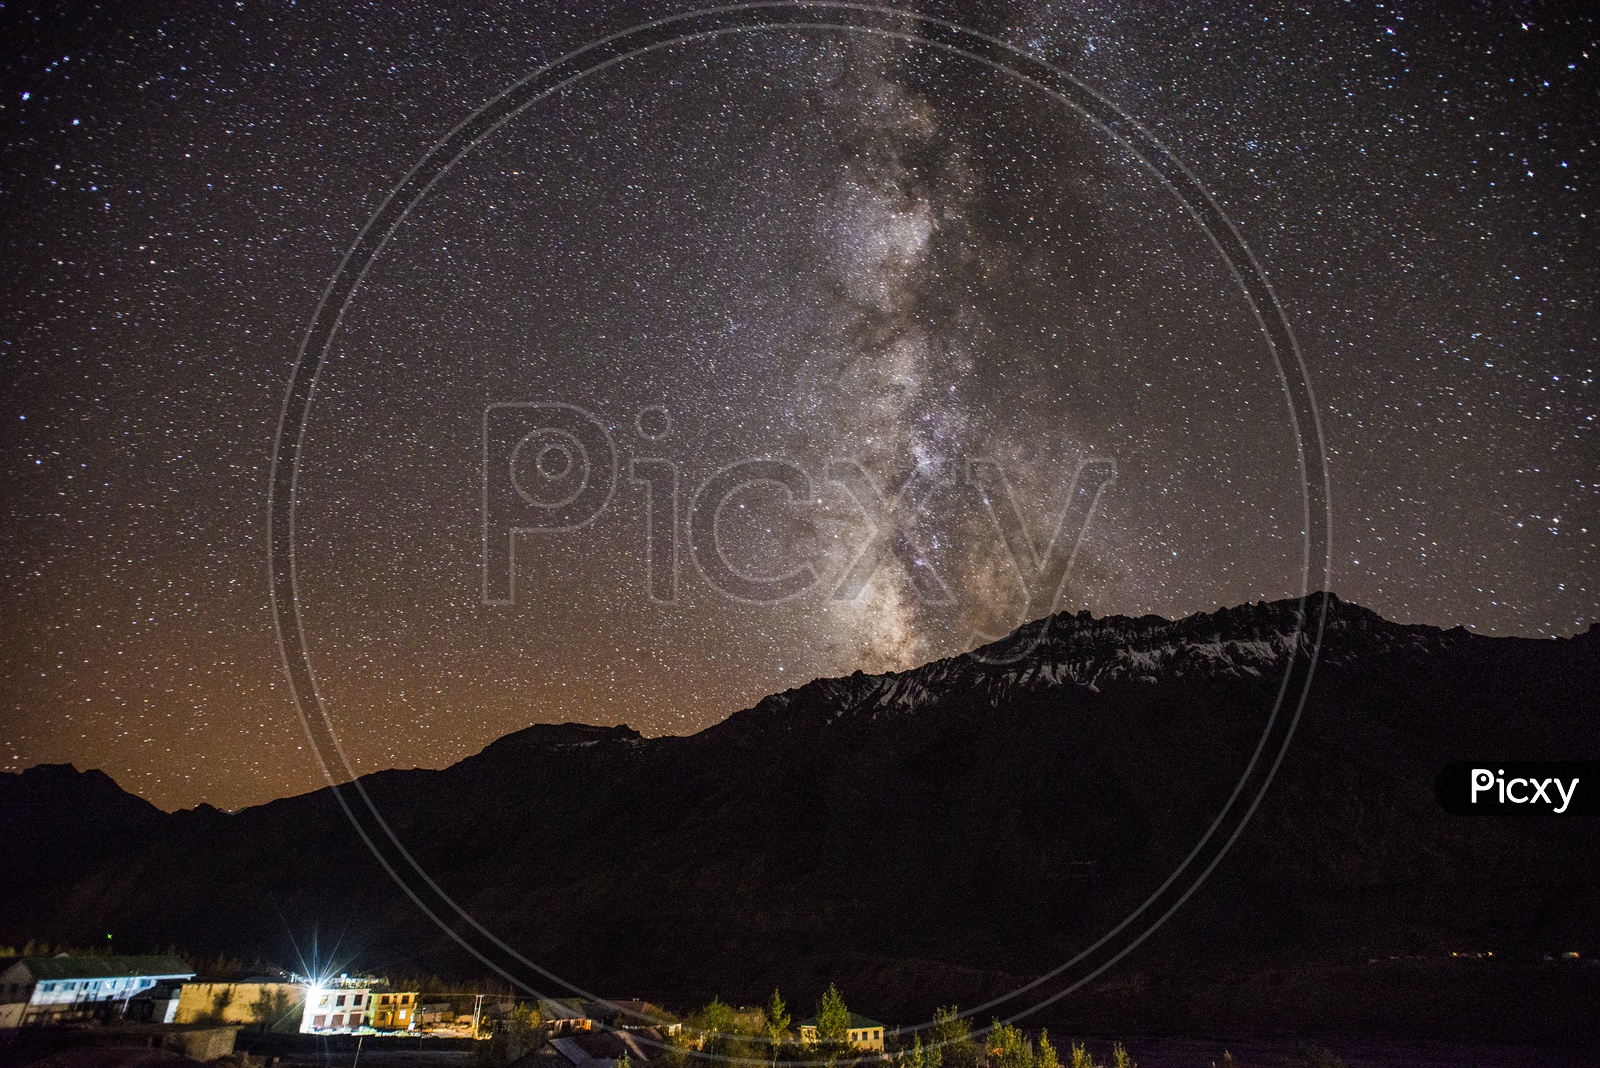 Star Gazing at Kaza, Spiti Valley